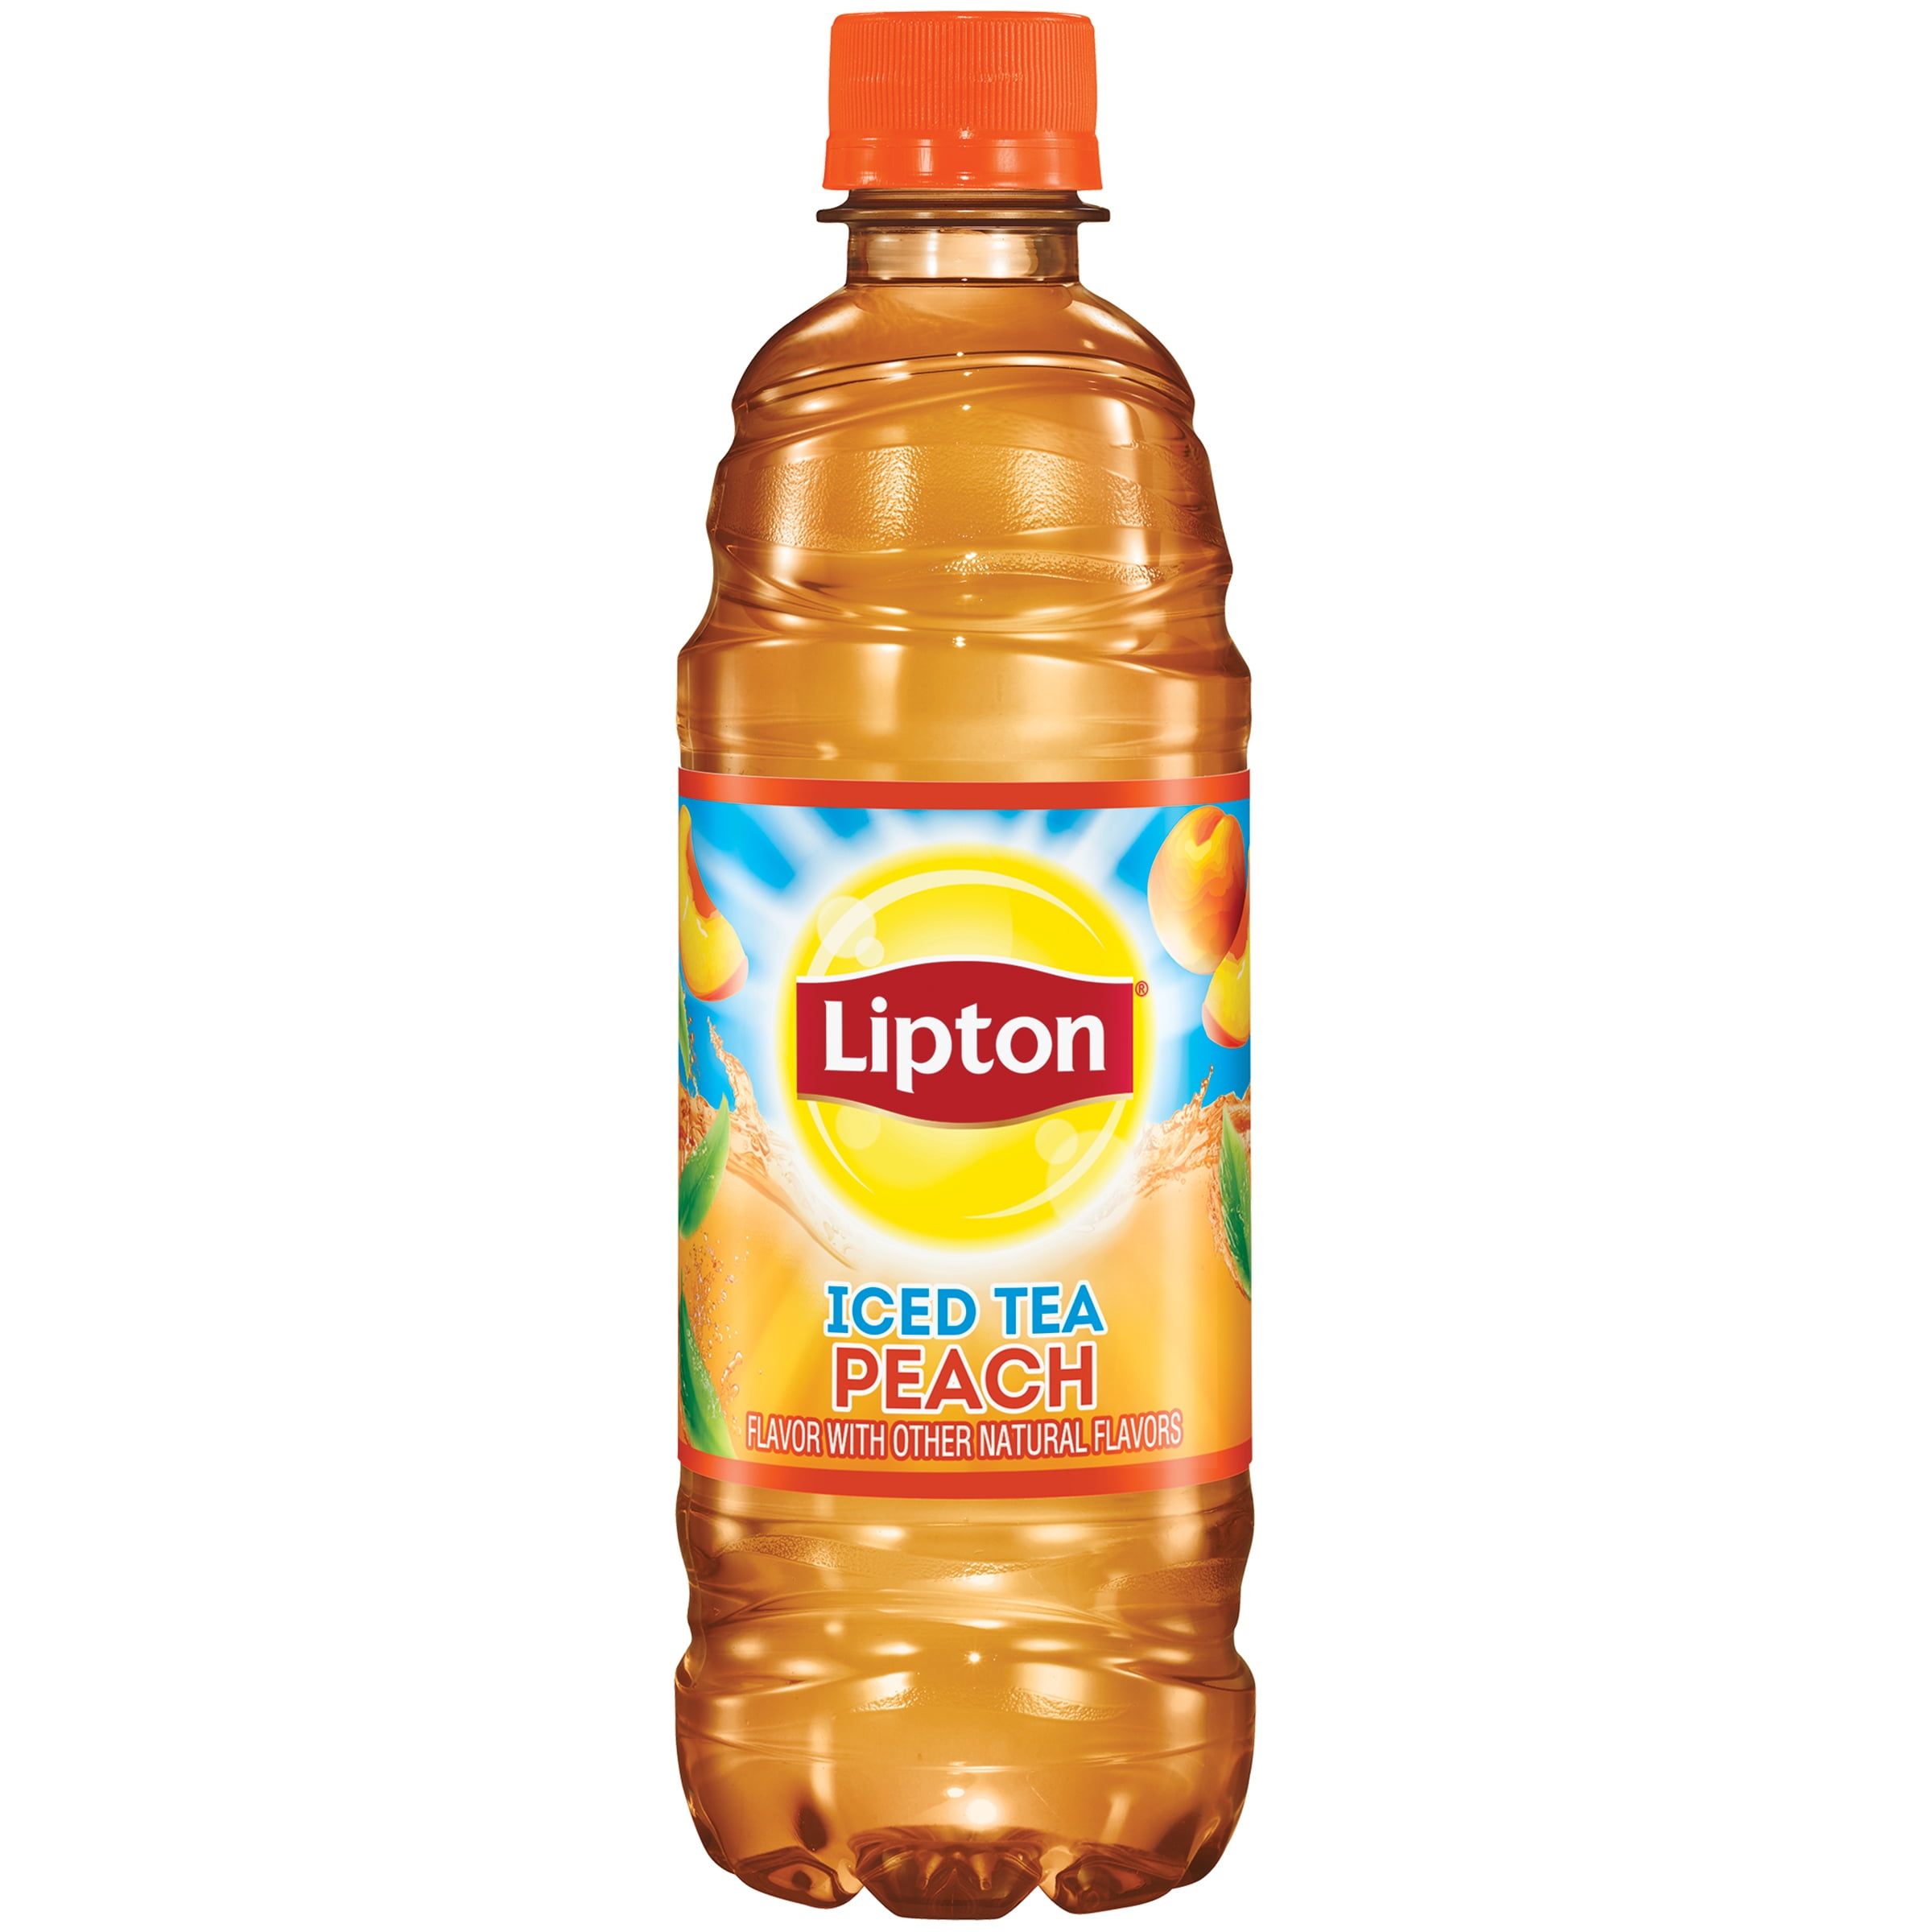 is lipton peach iced tea healthy